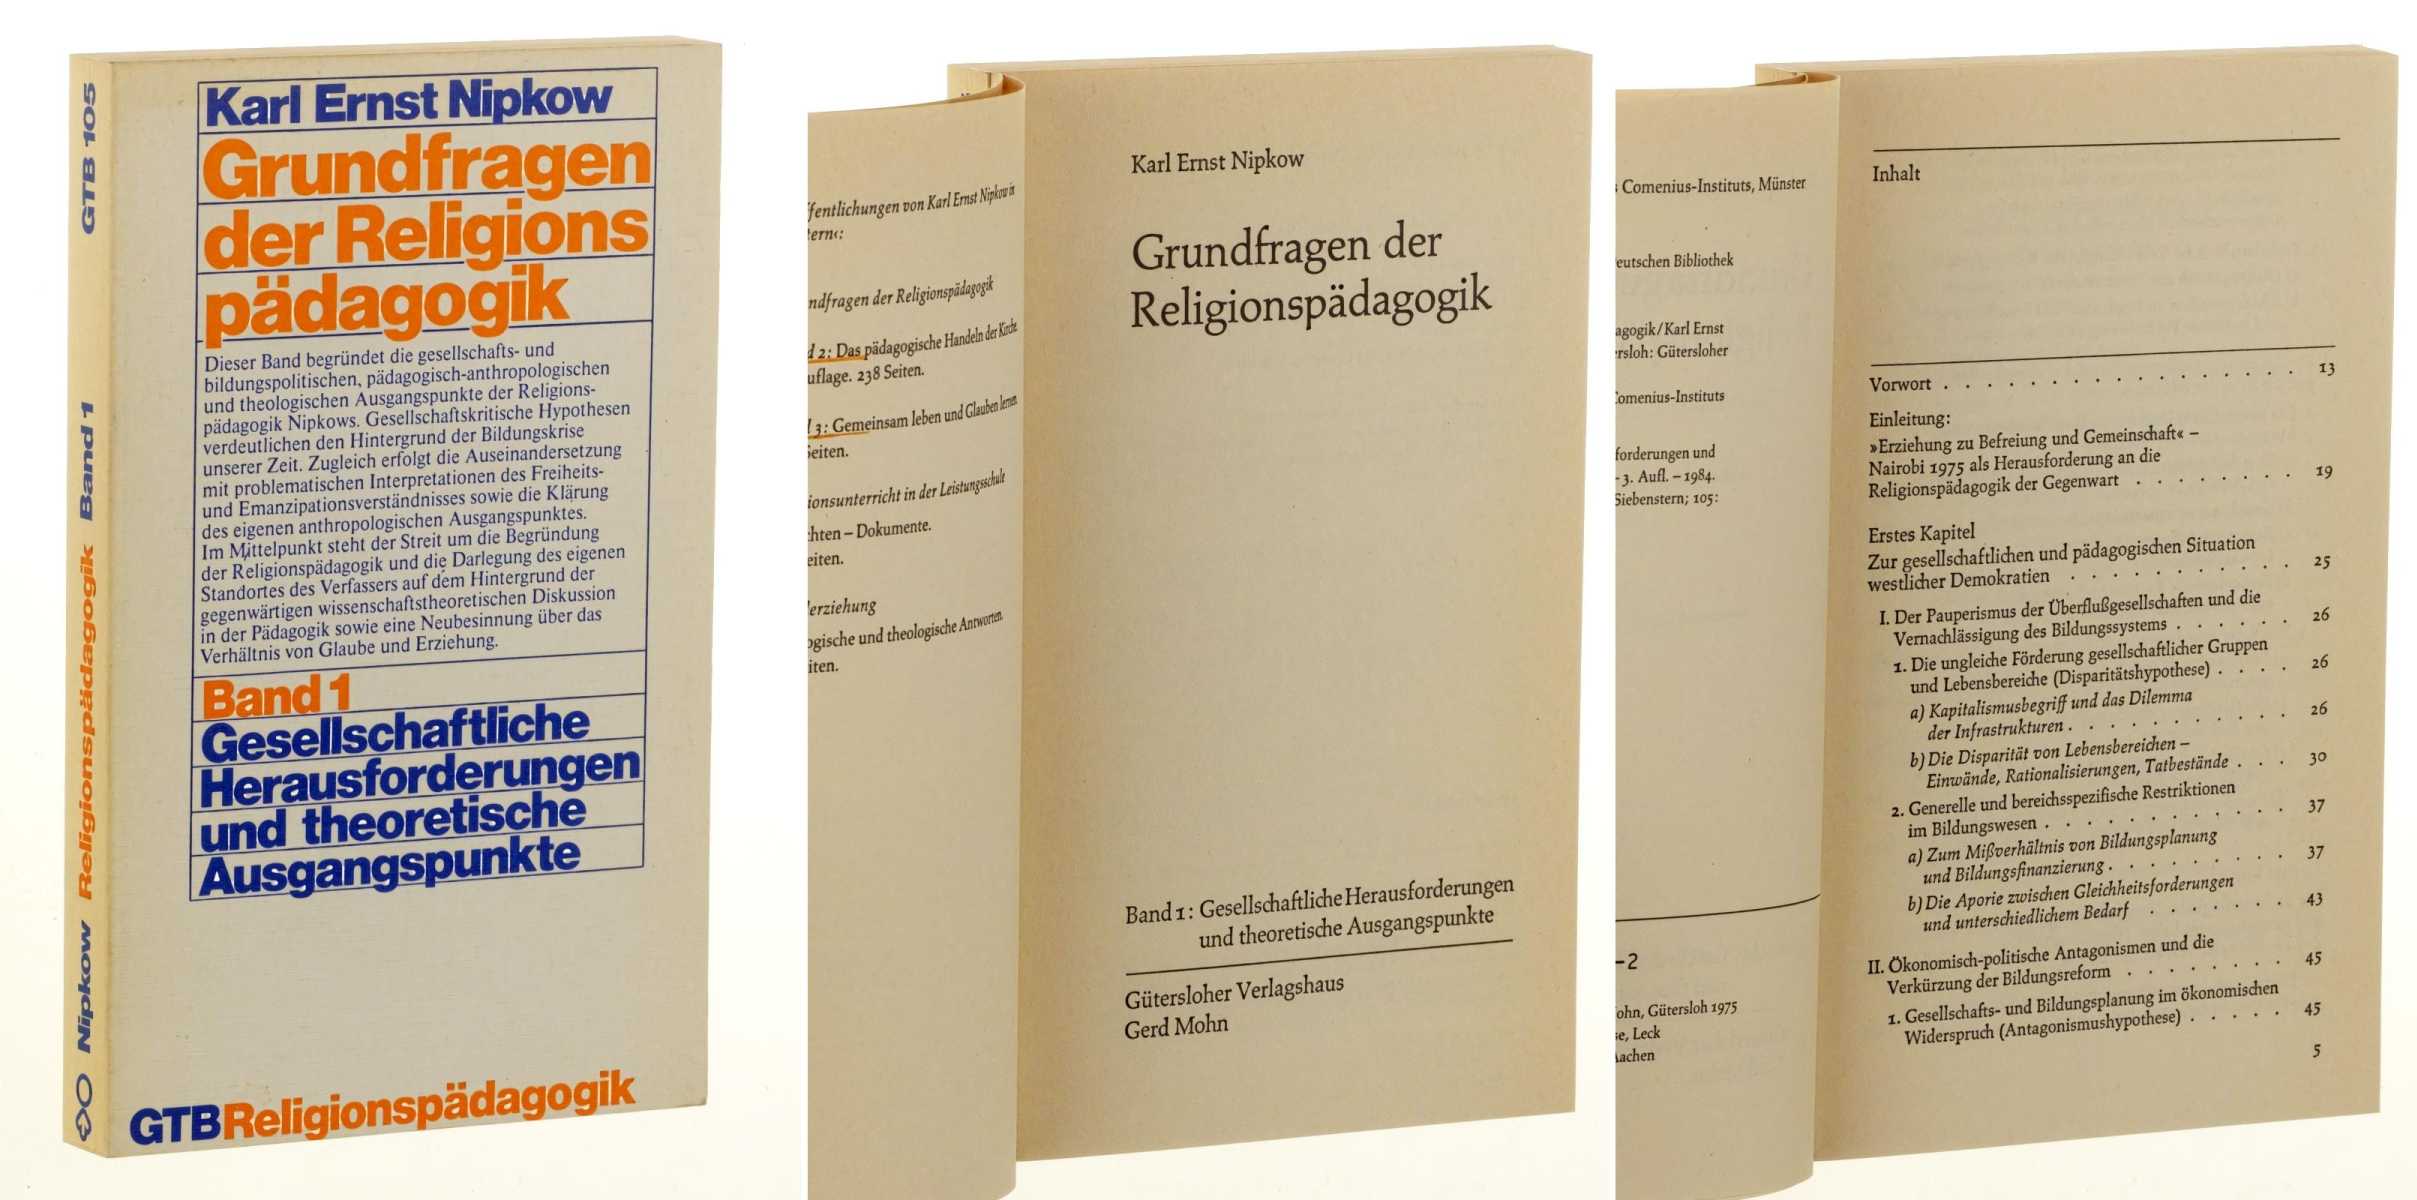 Nipkow, Karl Ernst:  Grundfragen der Religionspädagogik. Band 1: Gesellschaftliche Herausforderungen und theolritische Ausgangspunkte. 